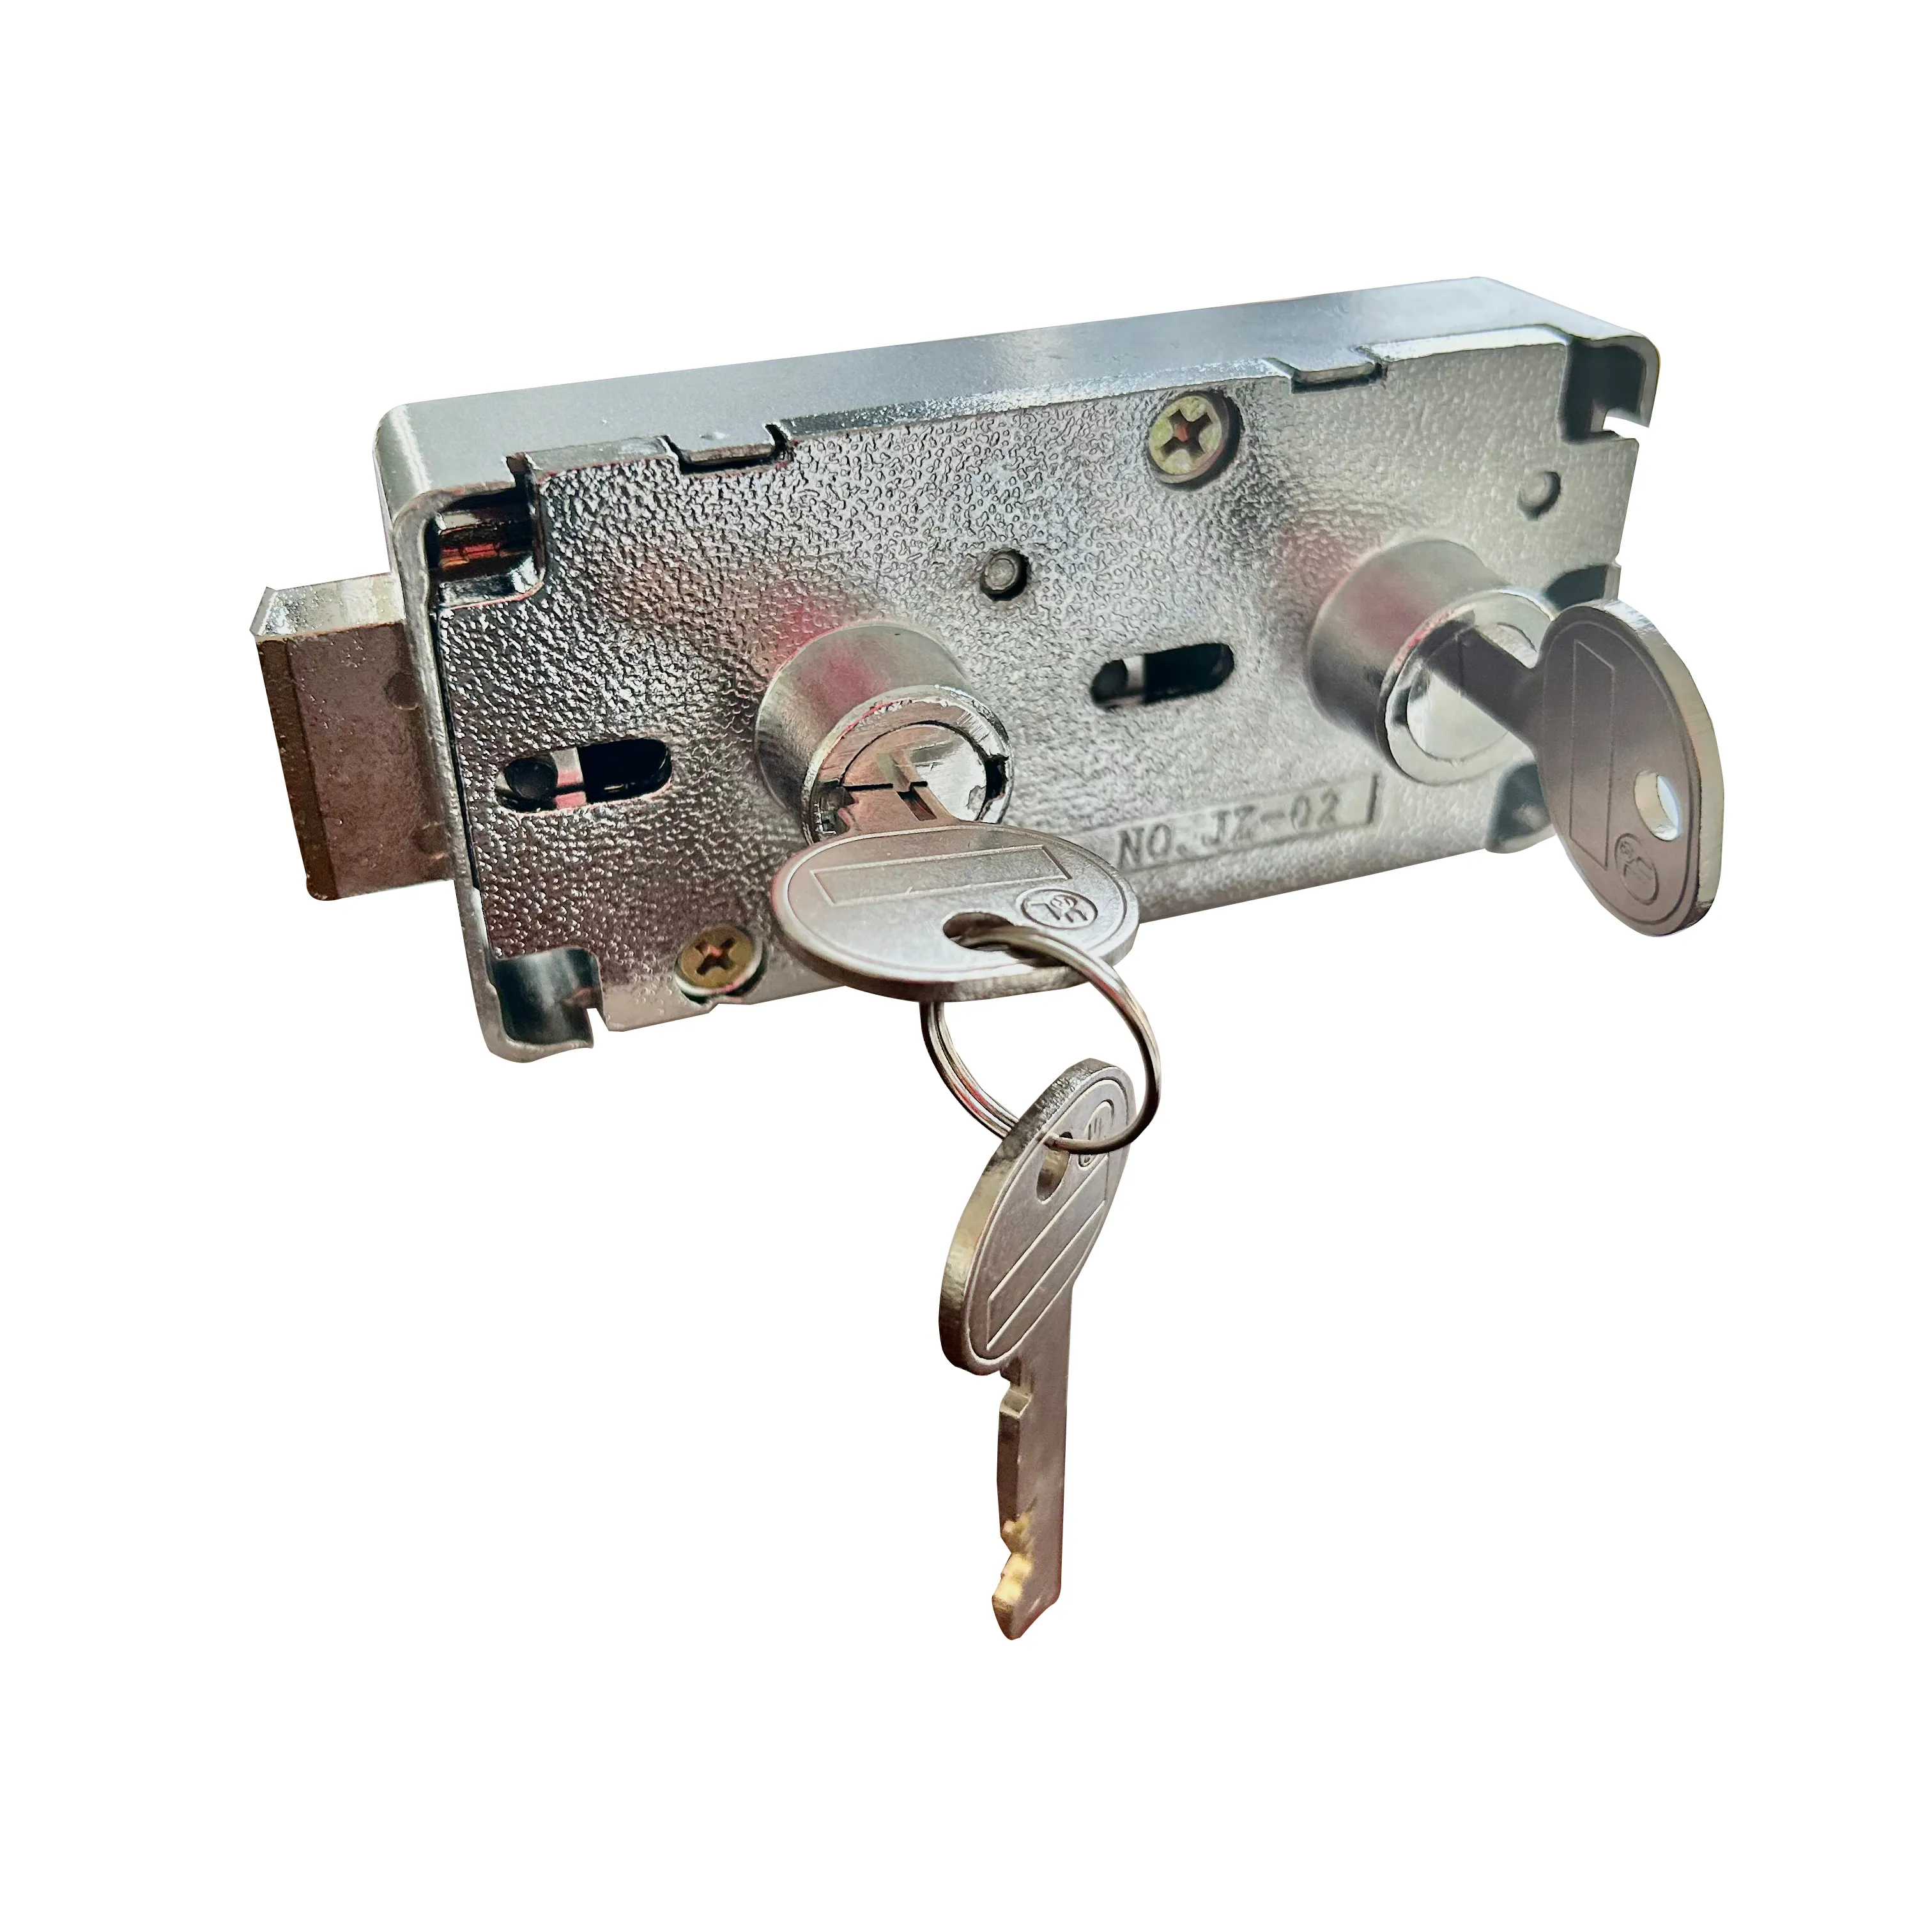 Fechamento chave duplo para o cofre com chave do cliente e chave mestra JZ-02